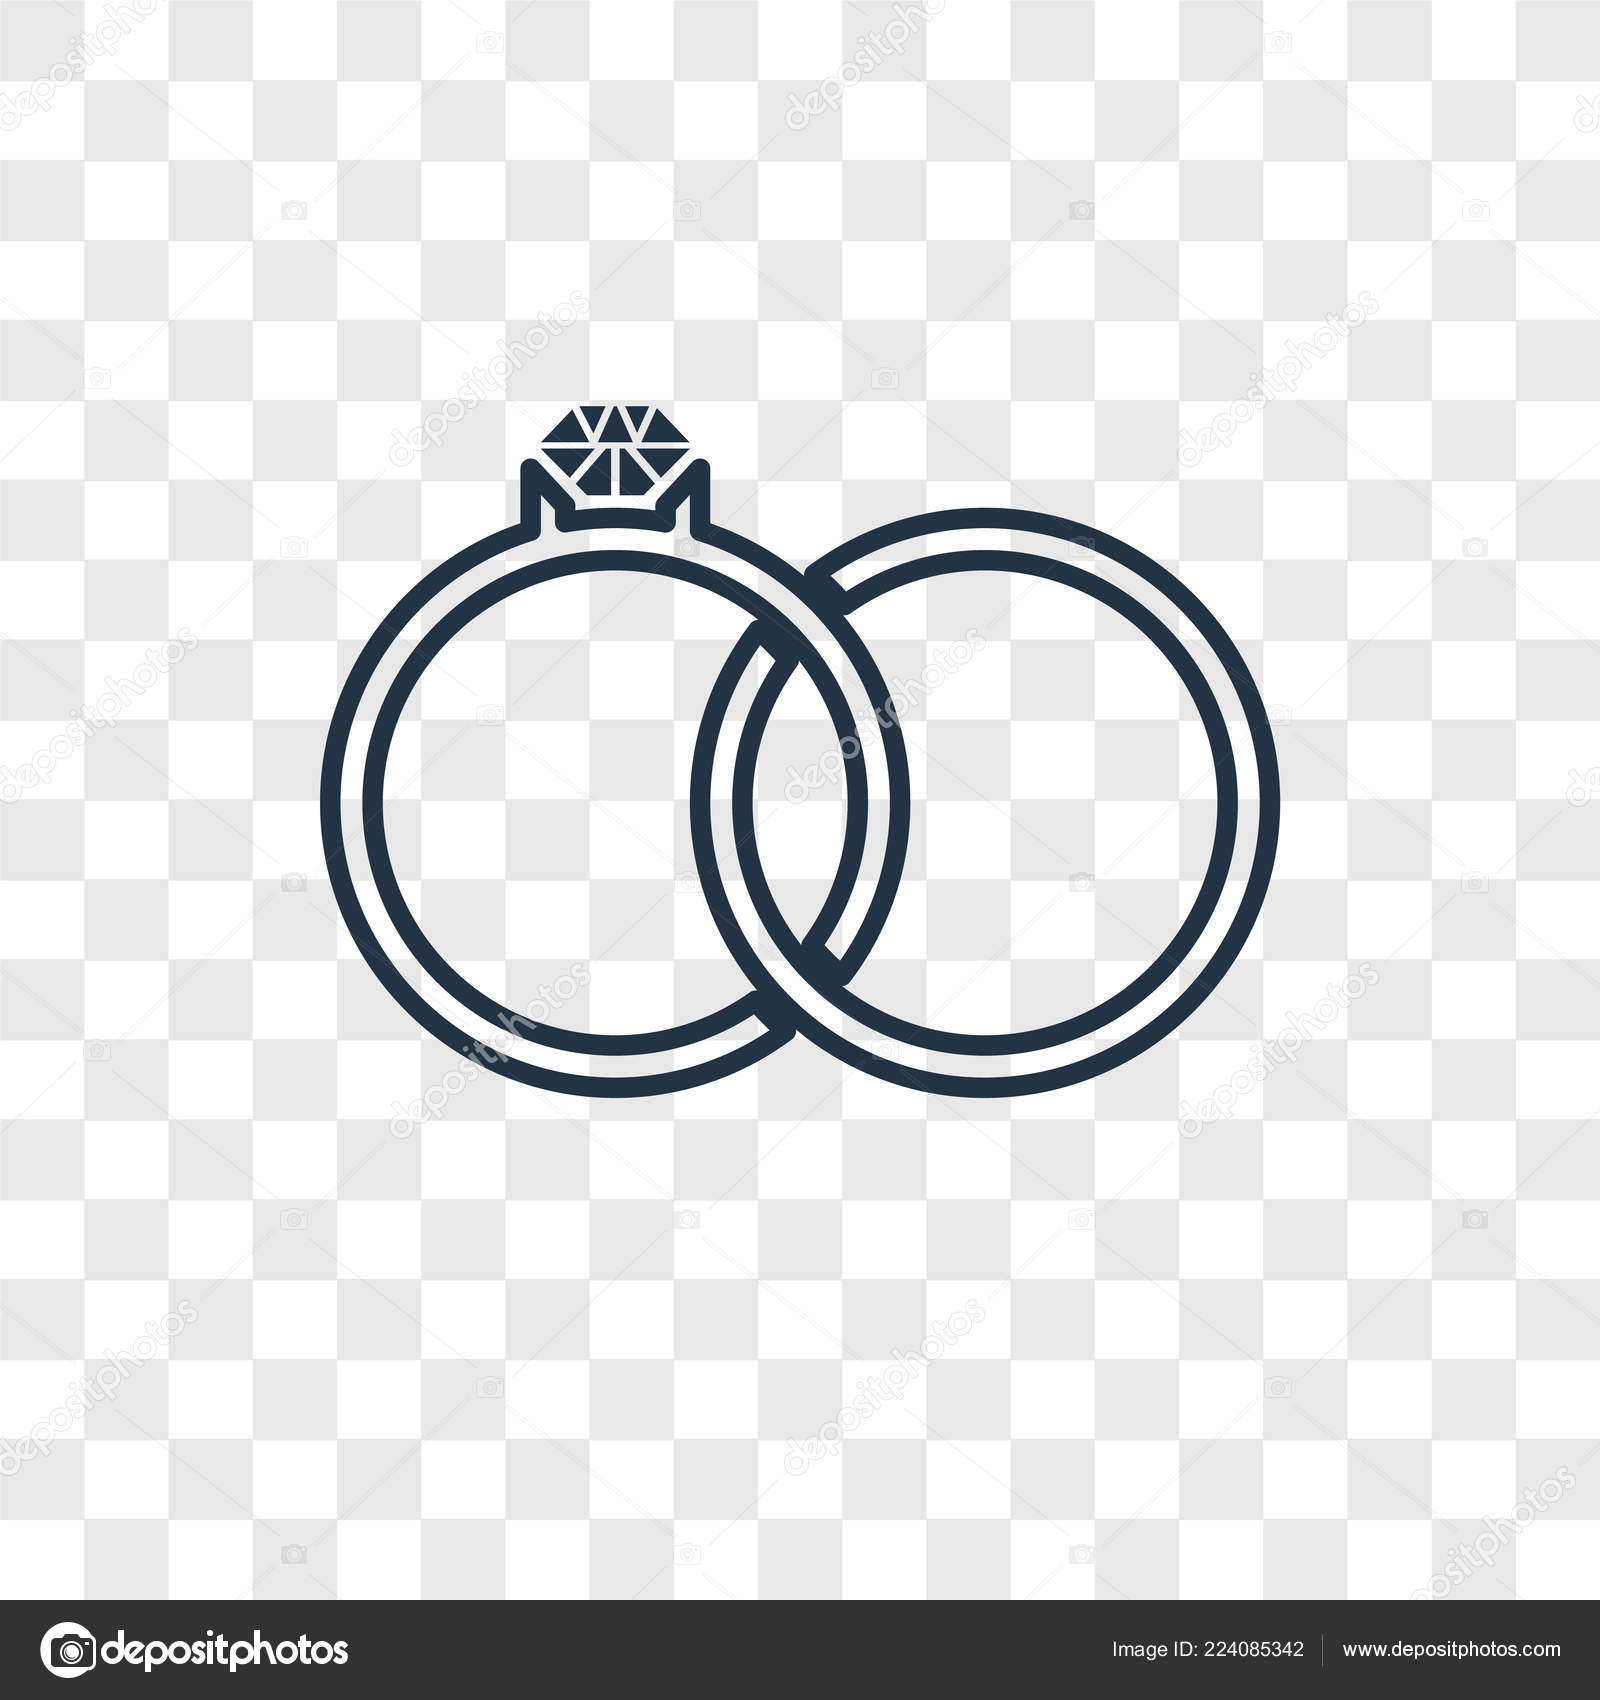 Geweldig Het formulier Buskruit Engagement Ring Icon Trendy Design Style Engagement Ring Icon Isolated  Stock Vector by ©TopVectorStock #224085342